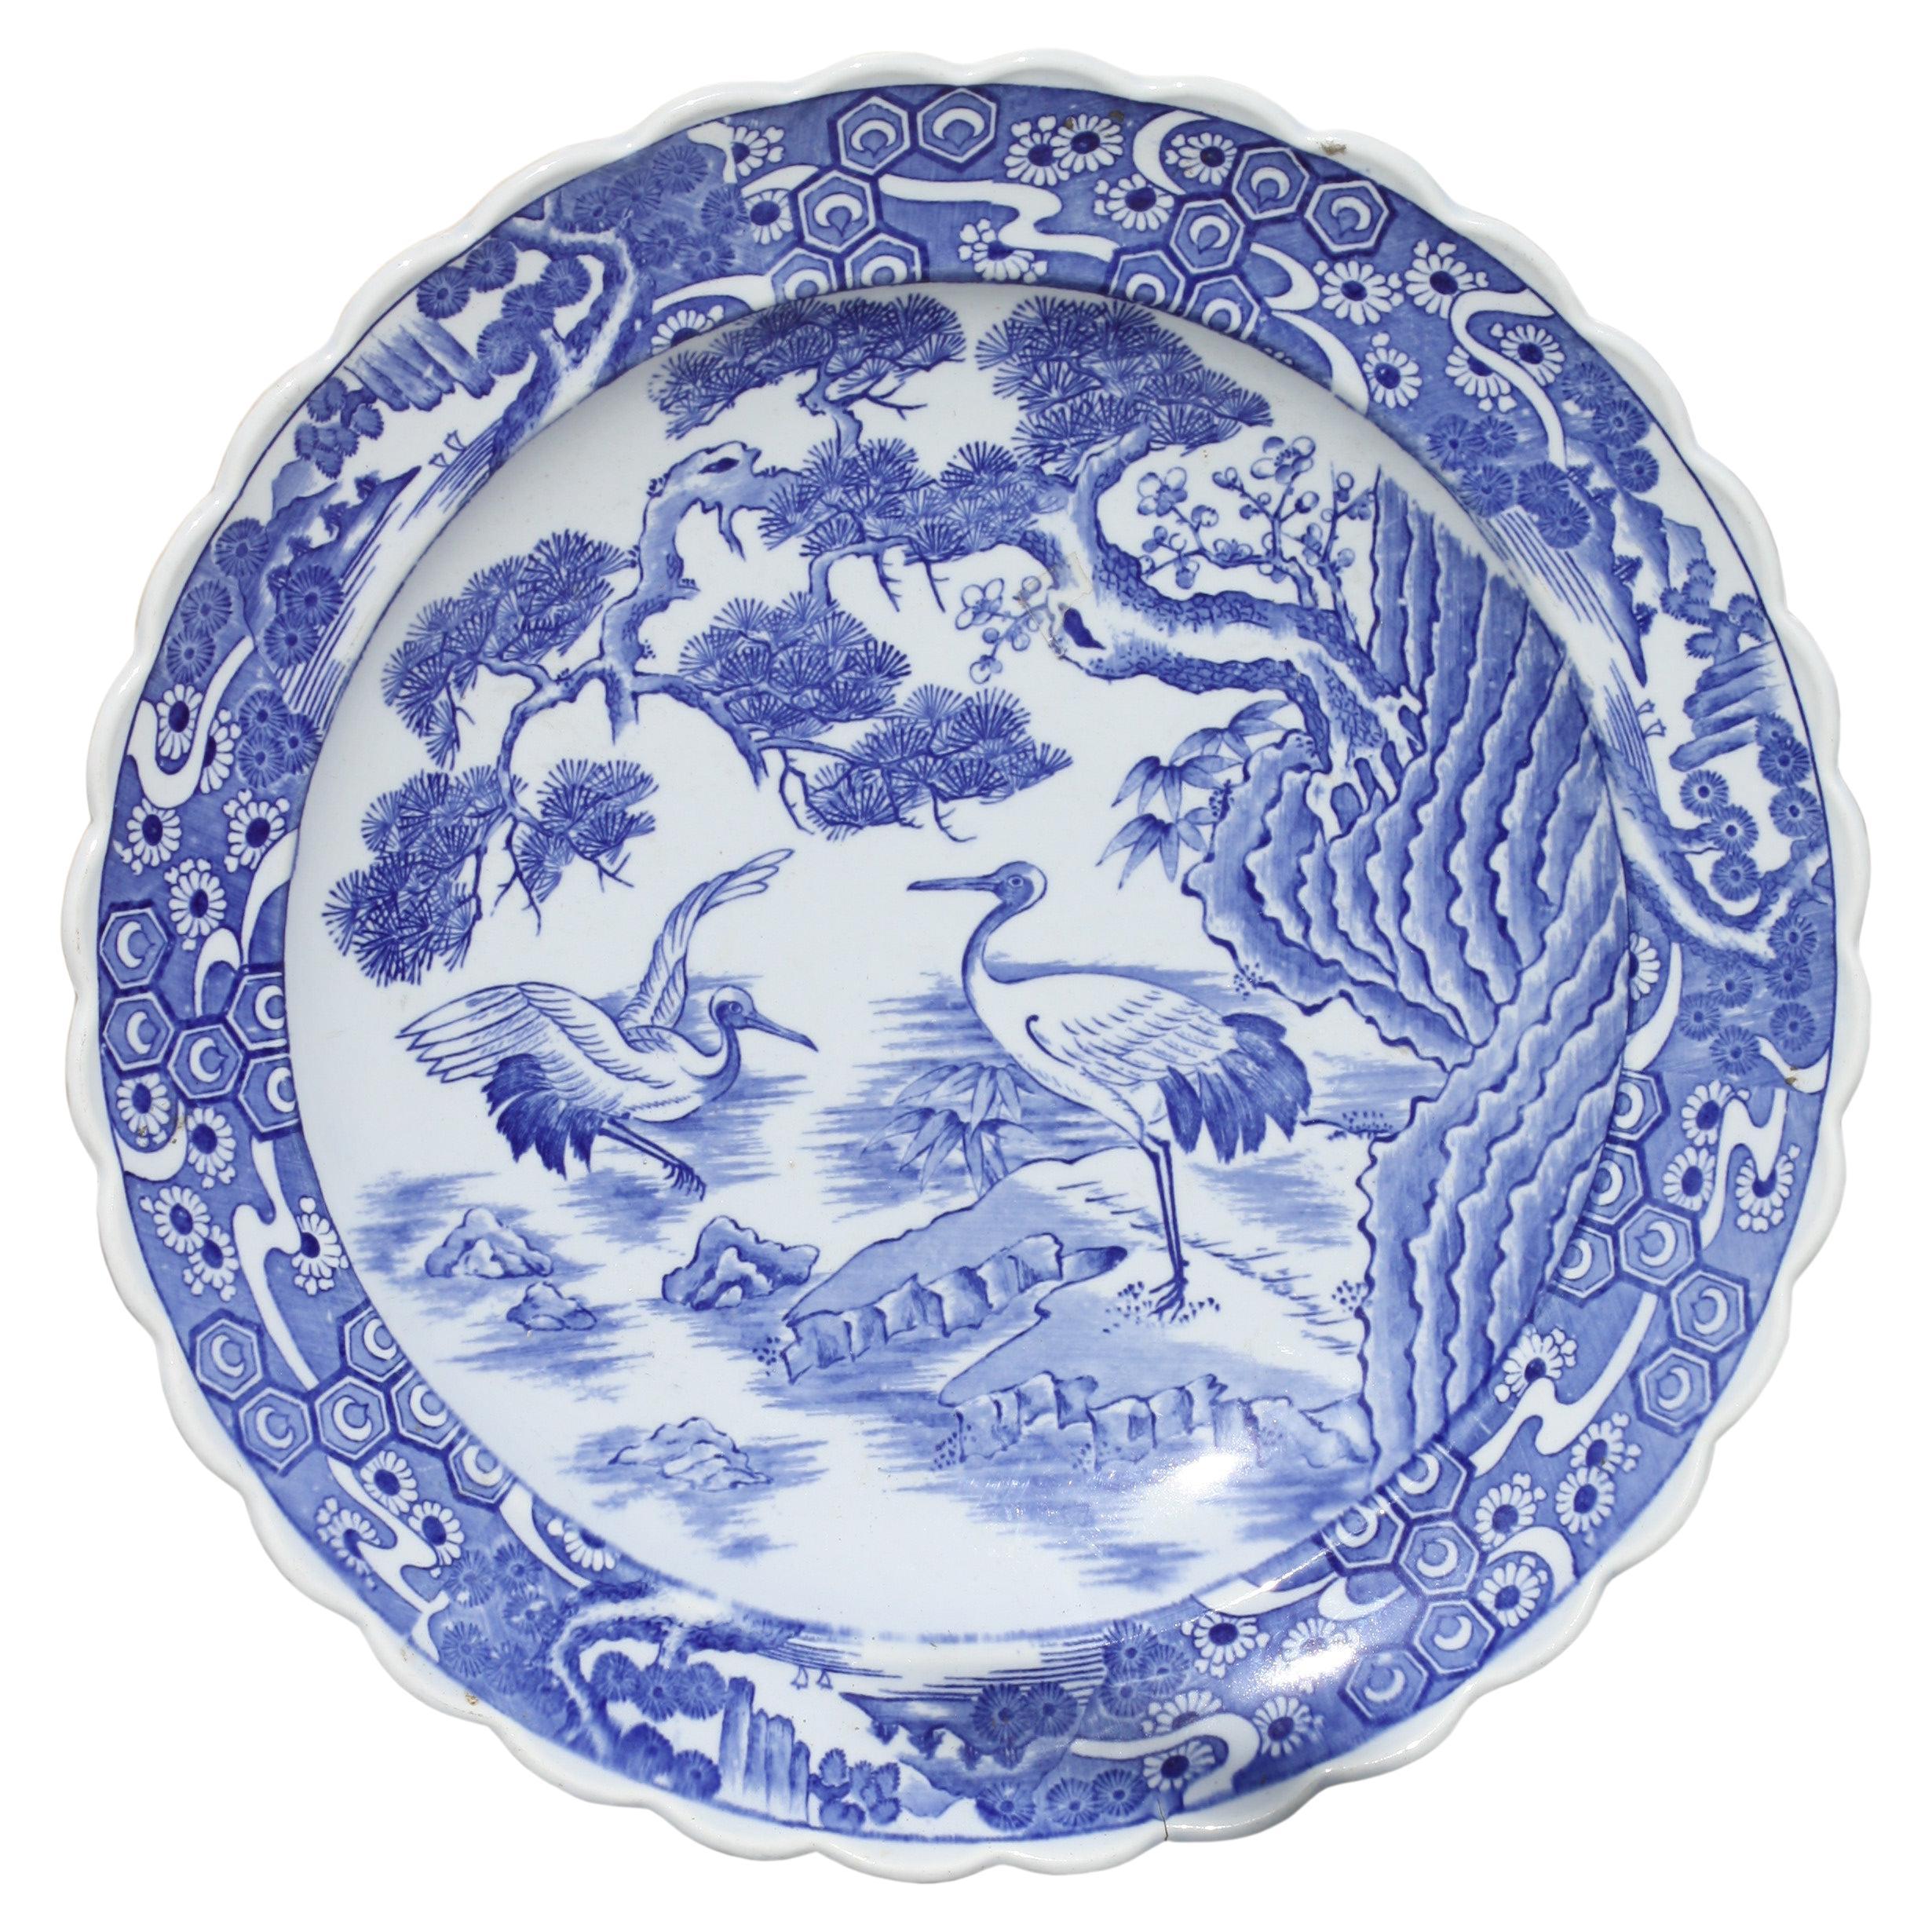 Assiette japonaise en porcelaine décorée en bleu et blanc, période Meiji (1868-1912)